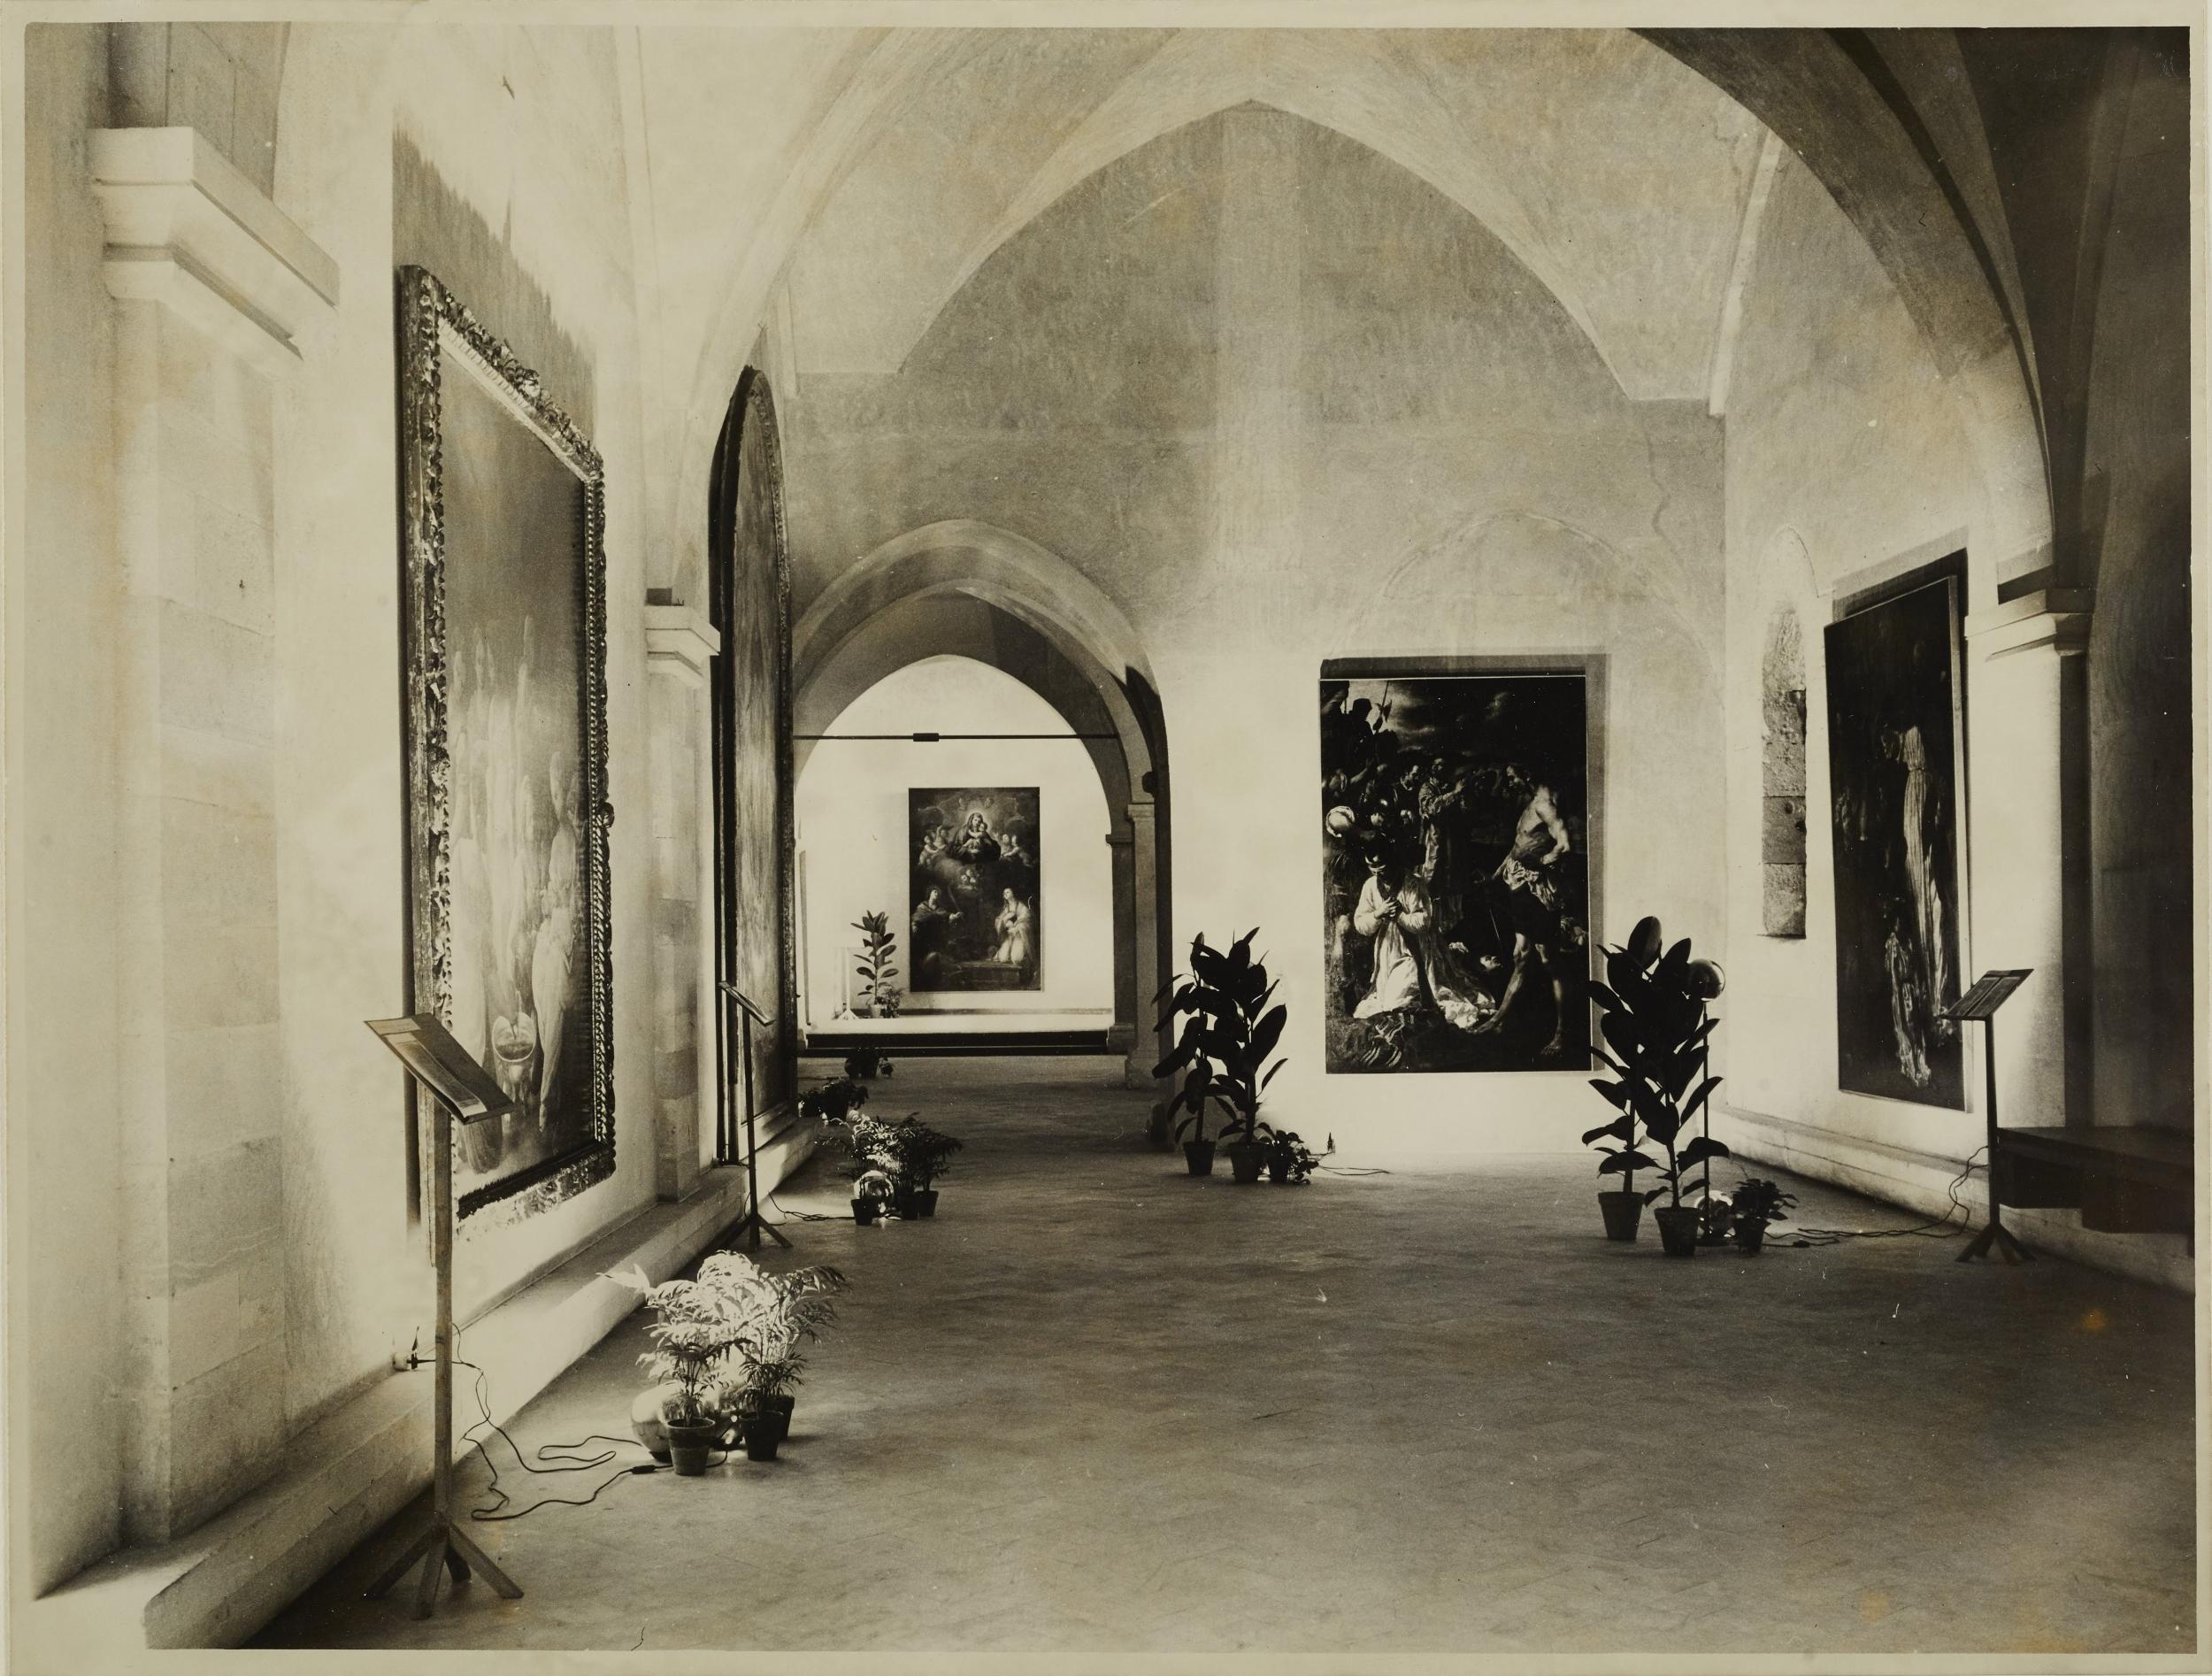 Fotografo non identificato, Bari - Castello Svevo, allestimento della mostra per la XI settimana dei musei, 1968, gelatina ai sali d'argento/carta, MPI136573